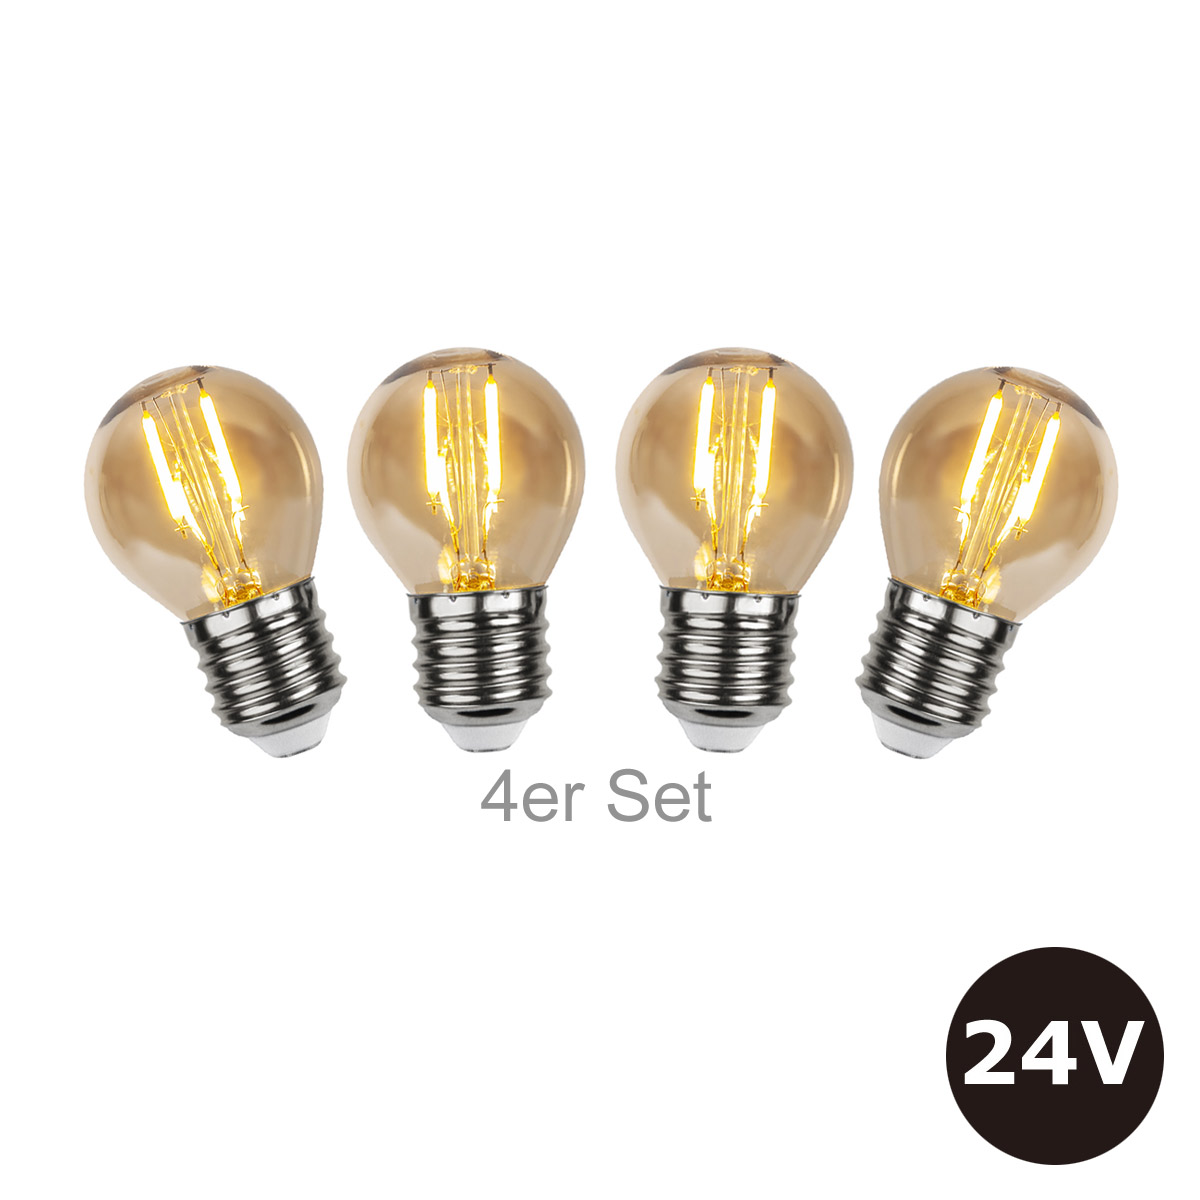 4er Set - 24V Leuchtmittel - 4,5cm - amber - 28lm - 2500K - E27